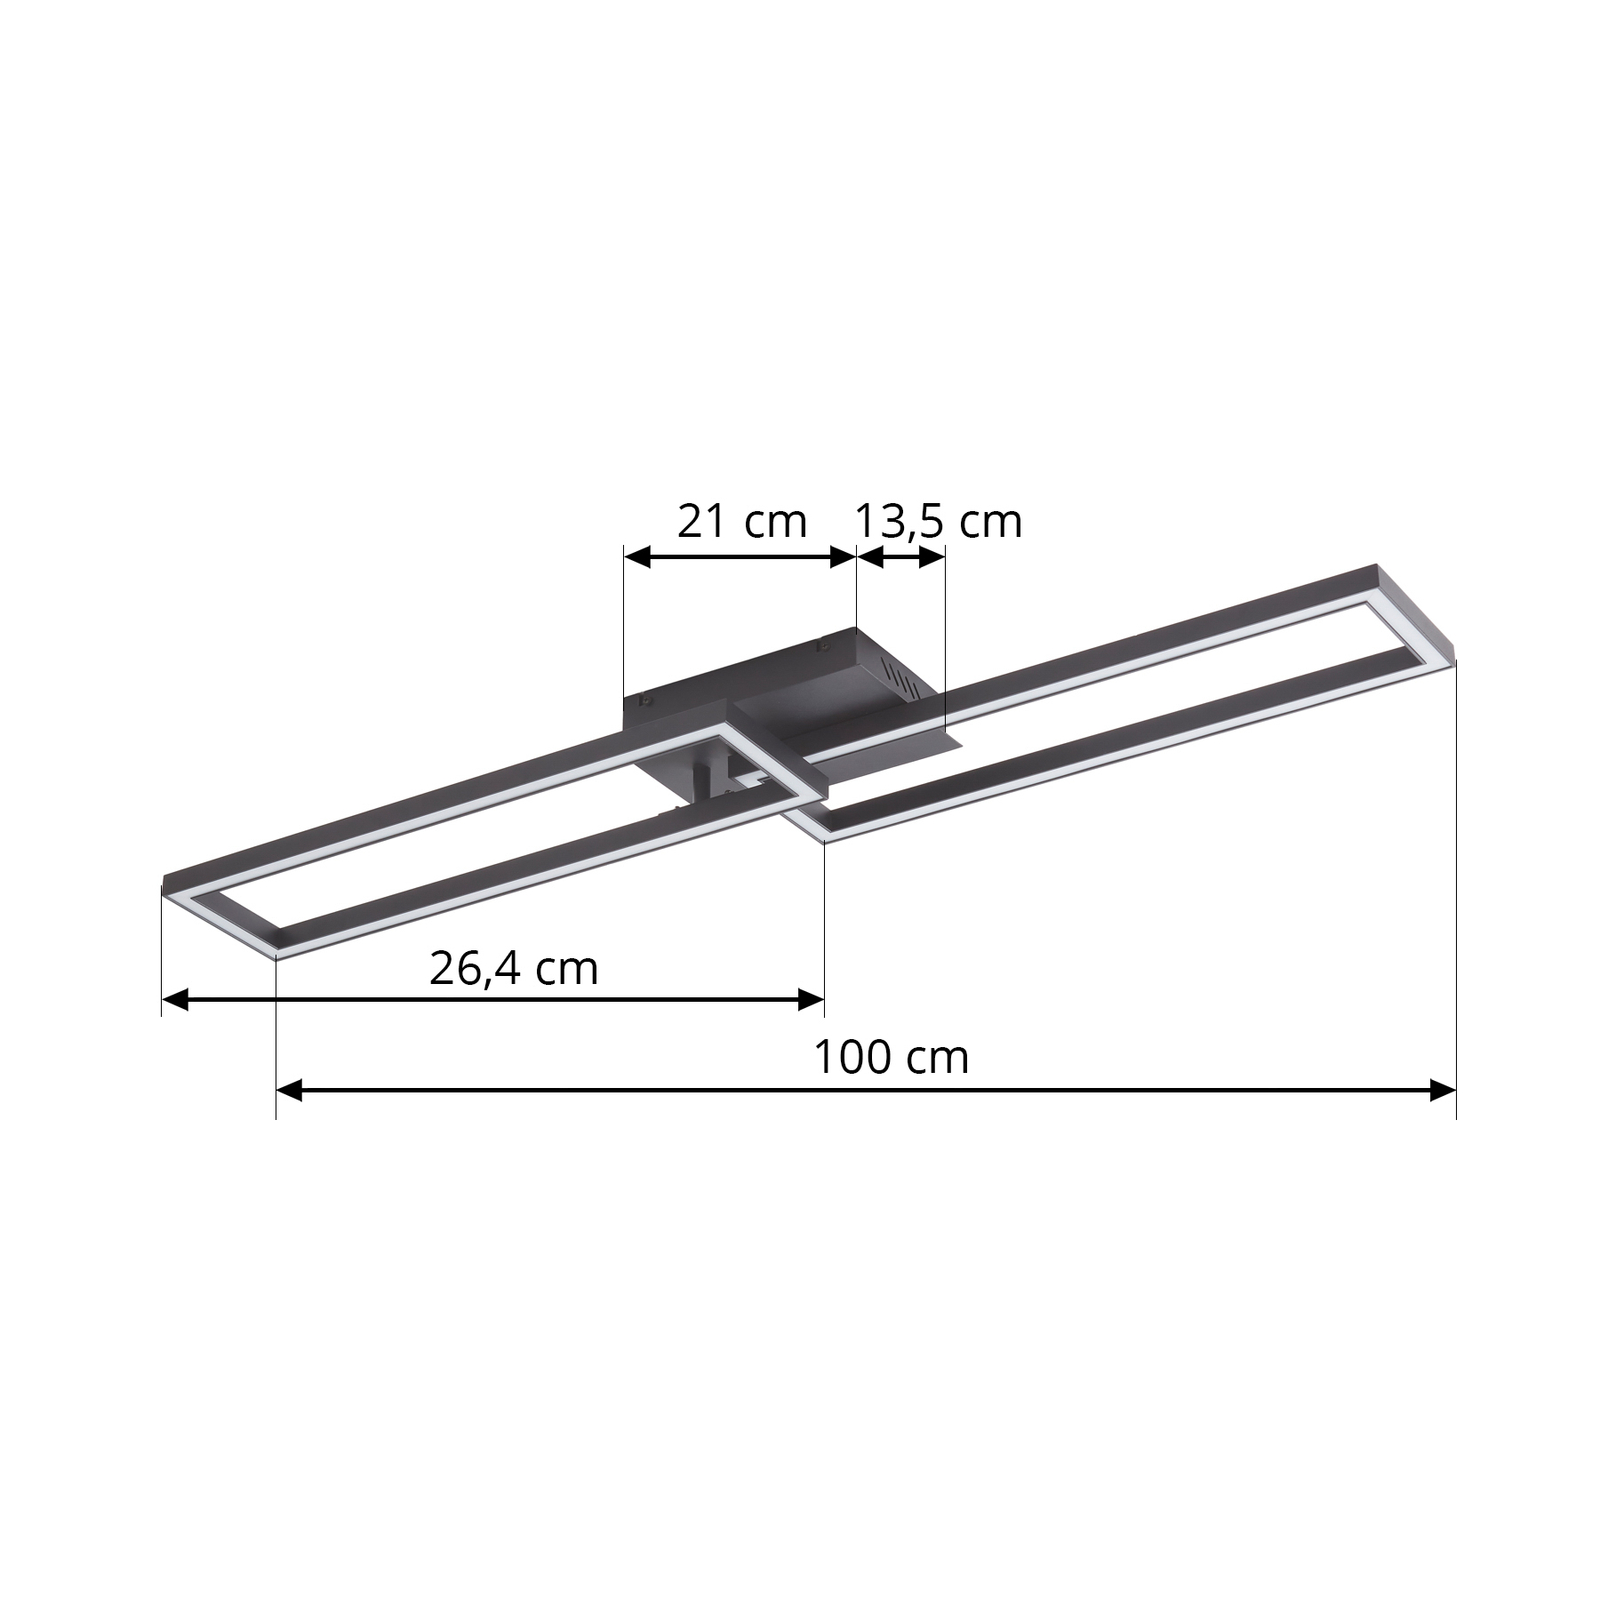 Lucande Plafonnier LED Tjado, 100 cm de long, noir, métal